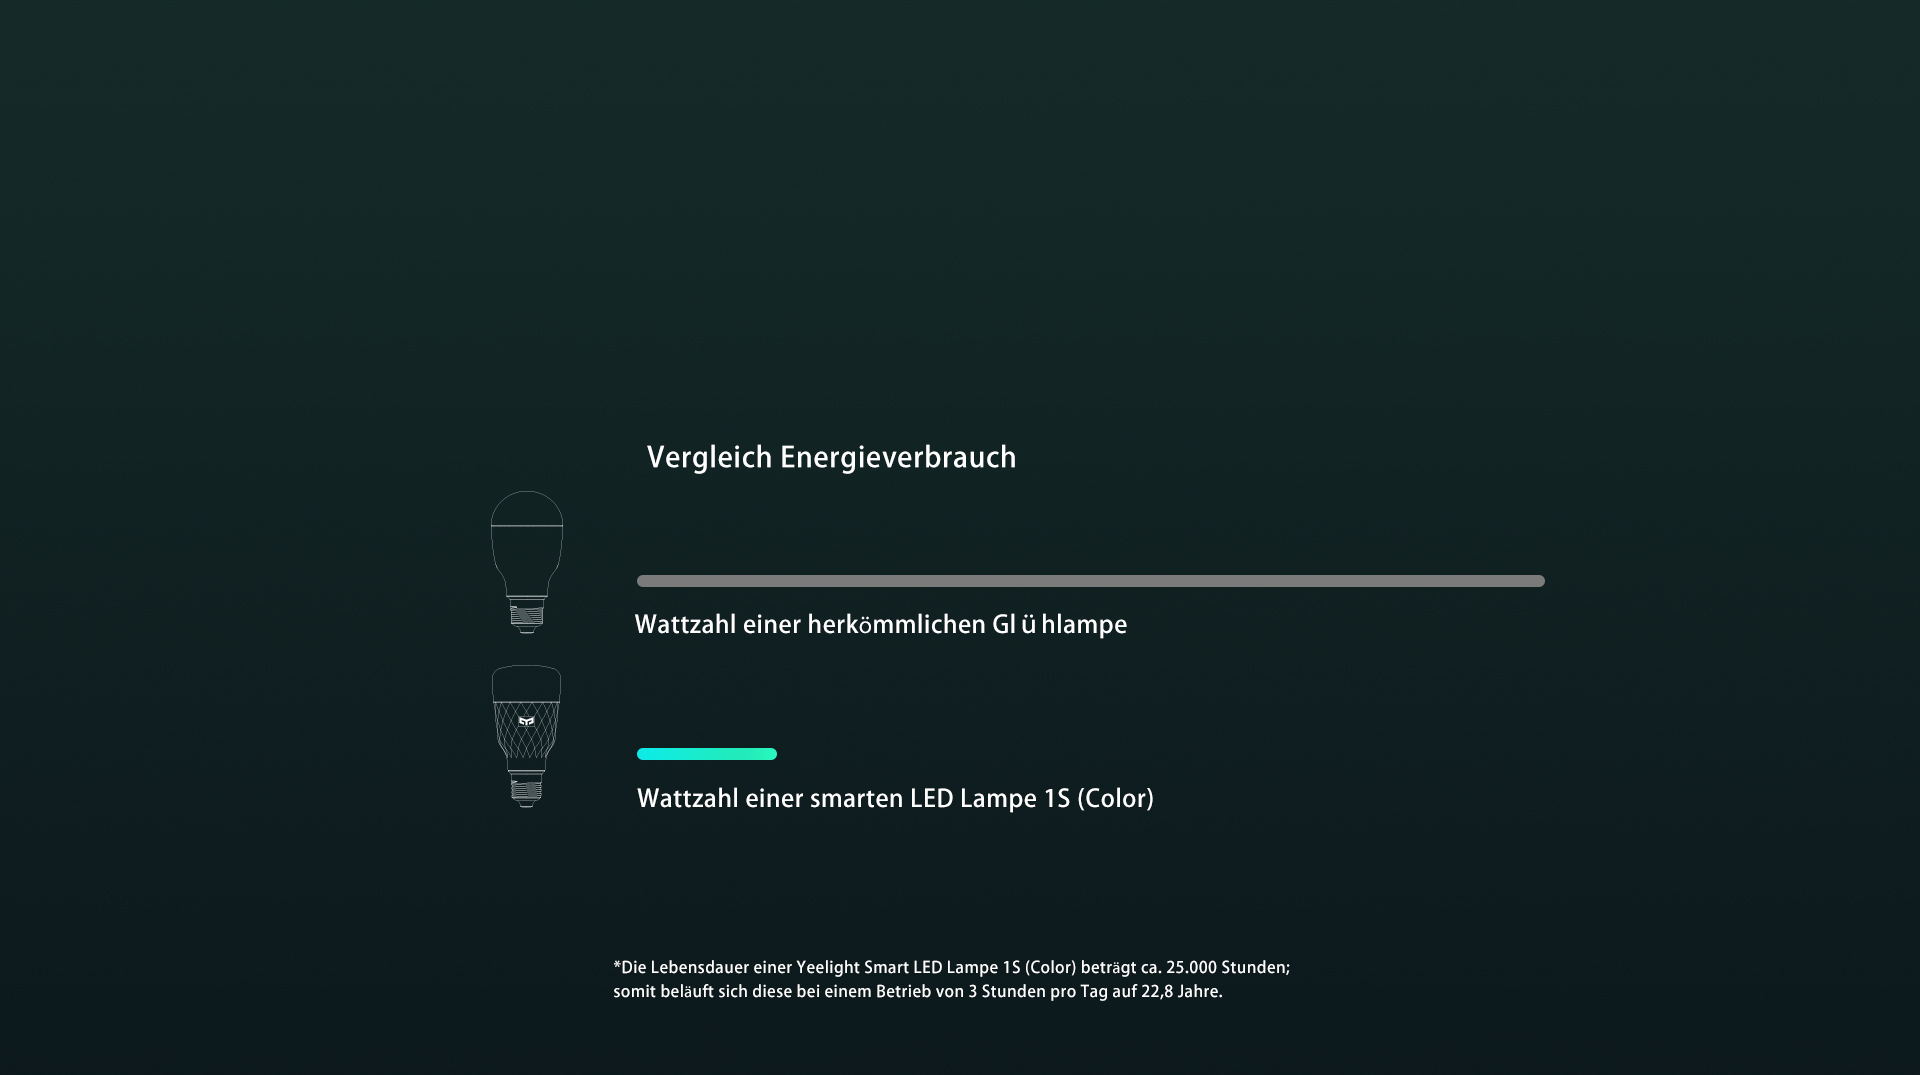 Energie und Geld sparen – eine weise Entscheidung » Smart LED Lampe 1S (Color)